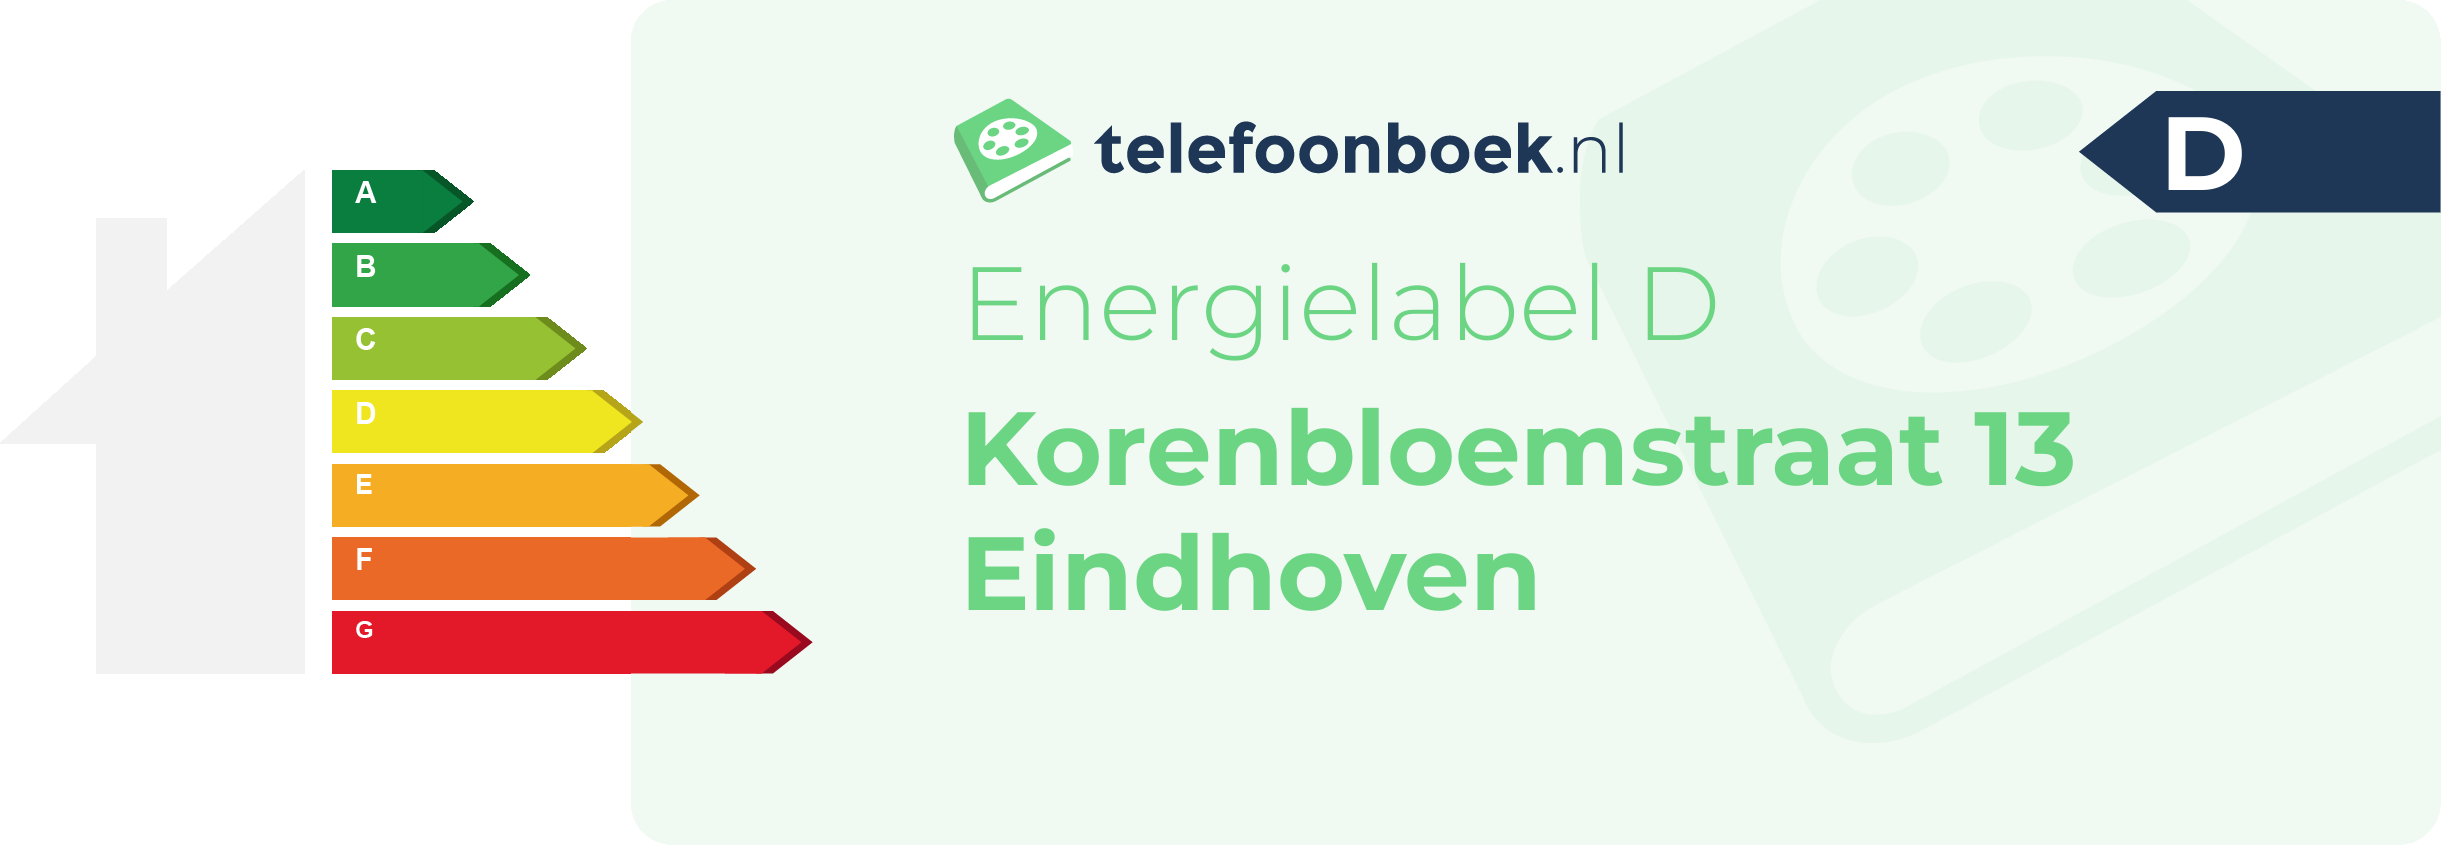 Energielabel Korenbloemstraat 13 Eindhoven